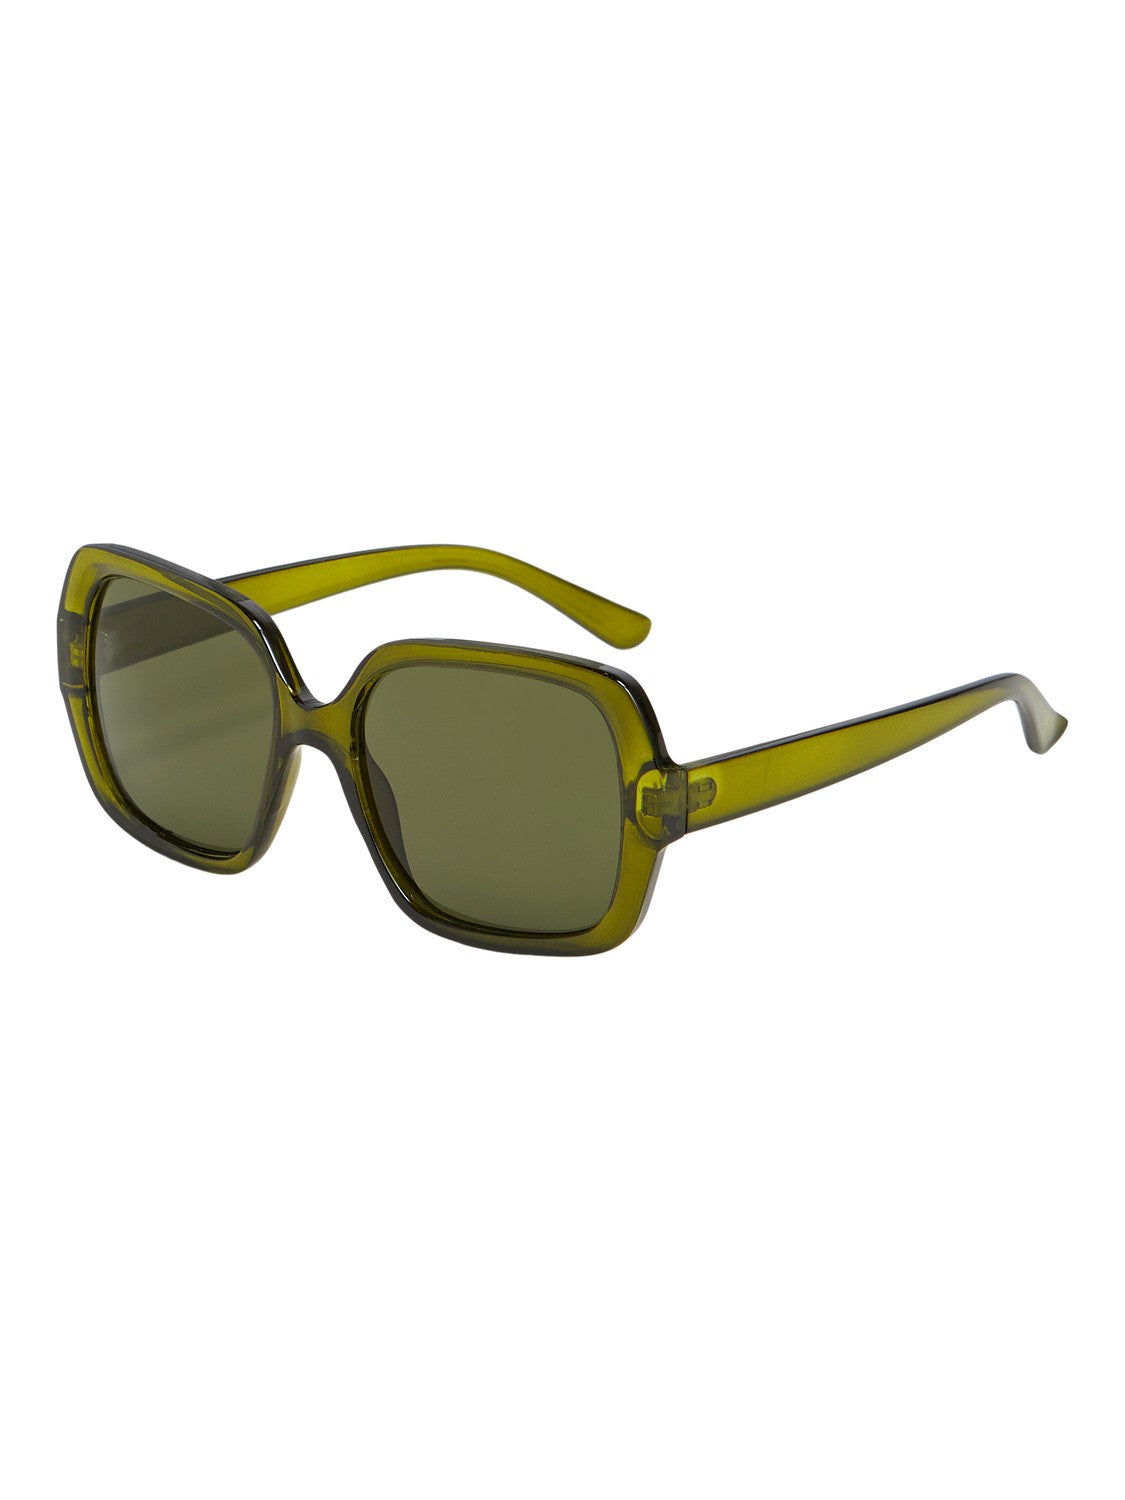 Makana Sunglasses (Vineyard Green)